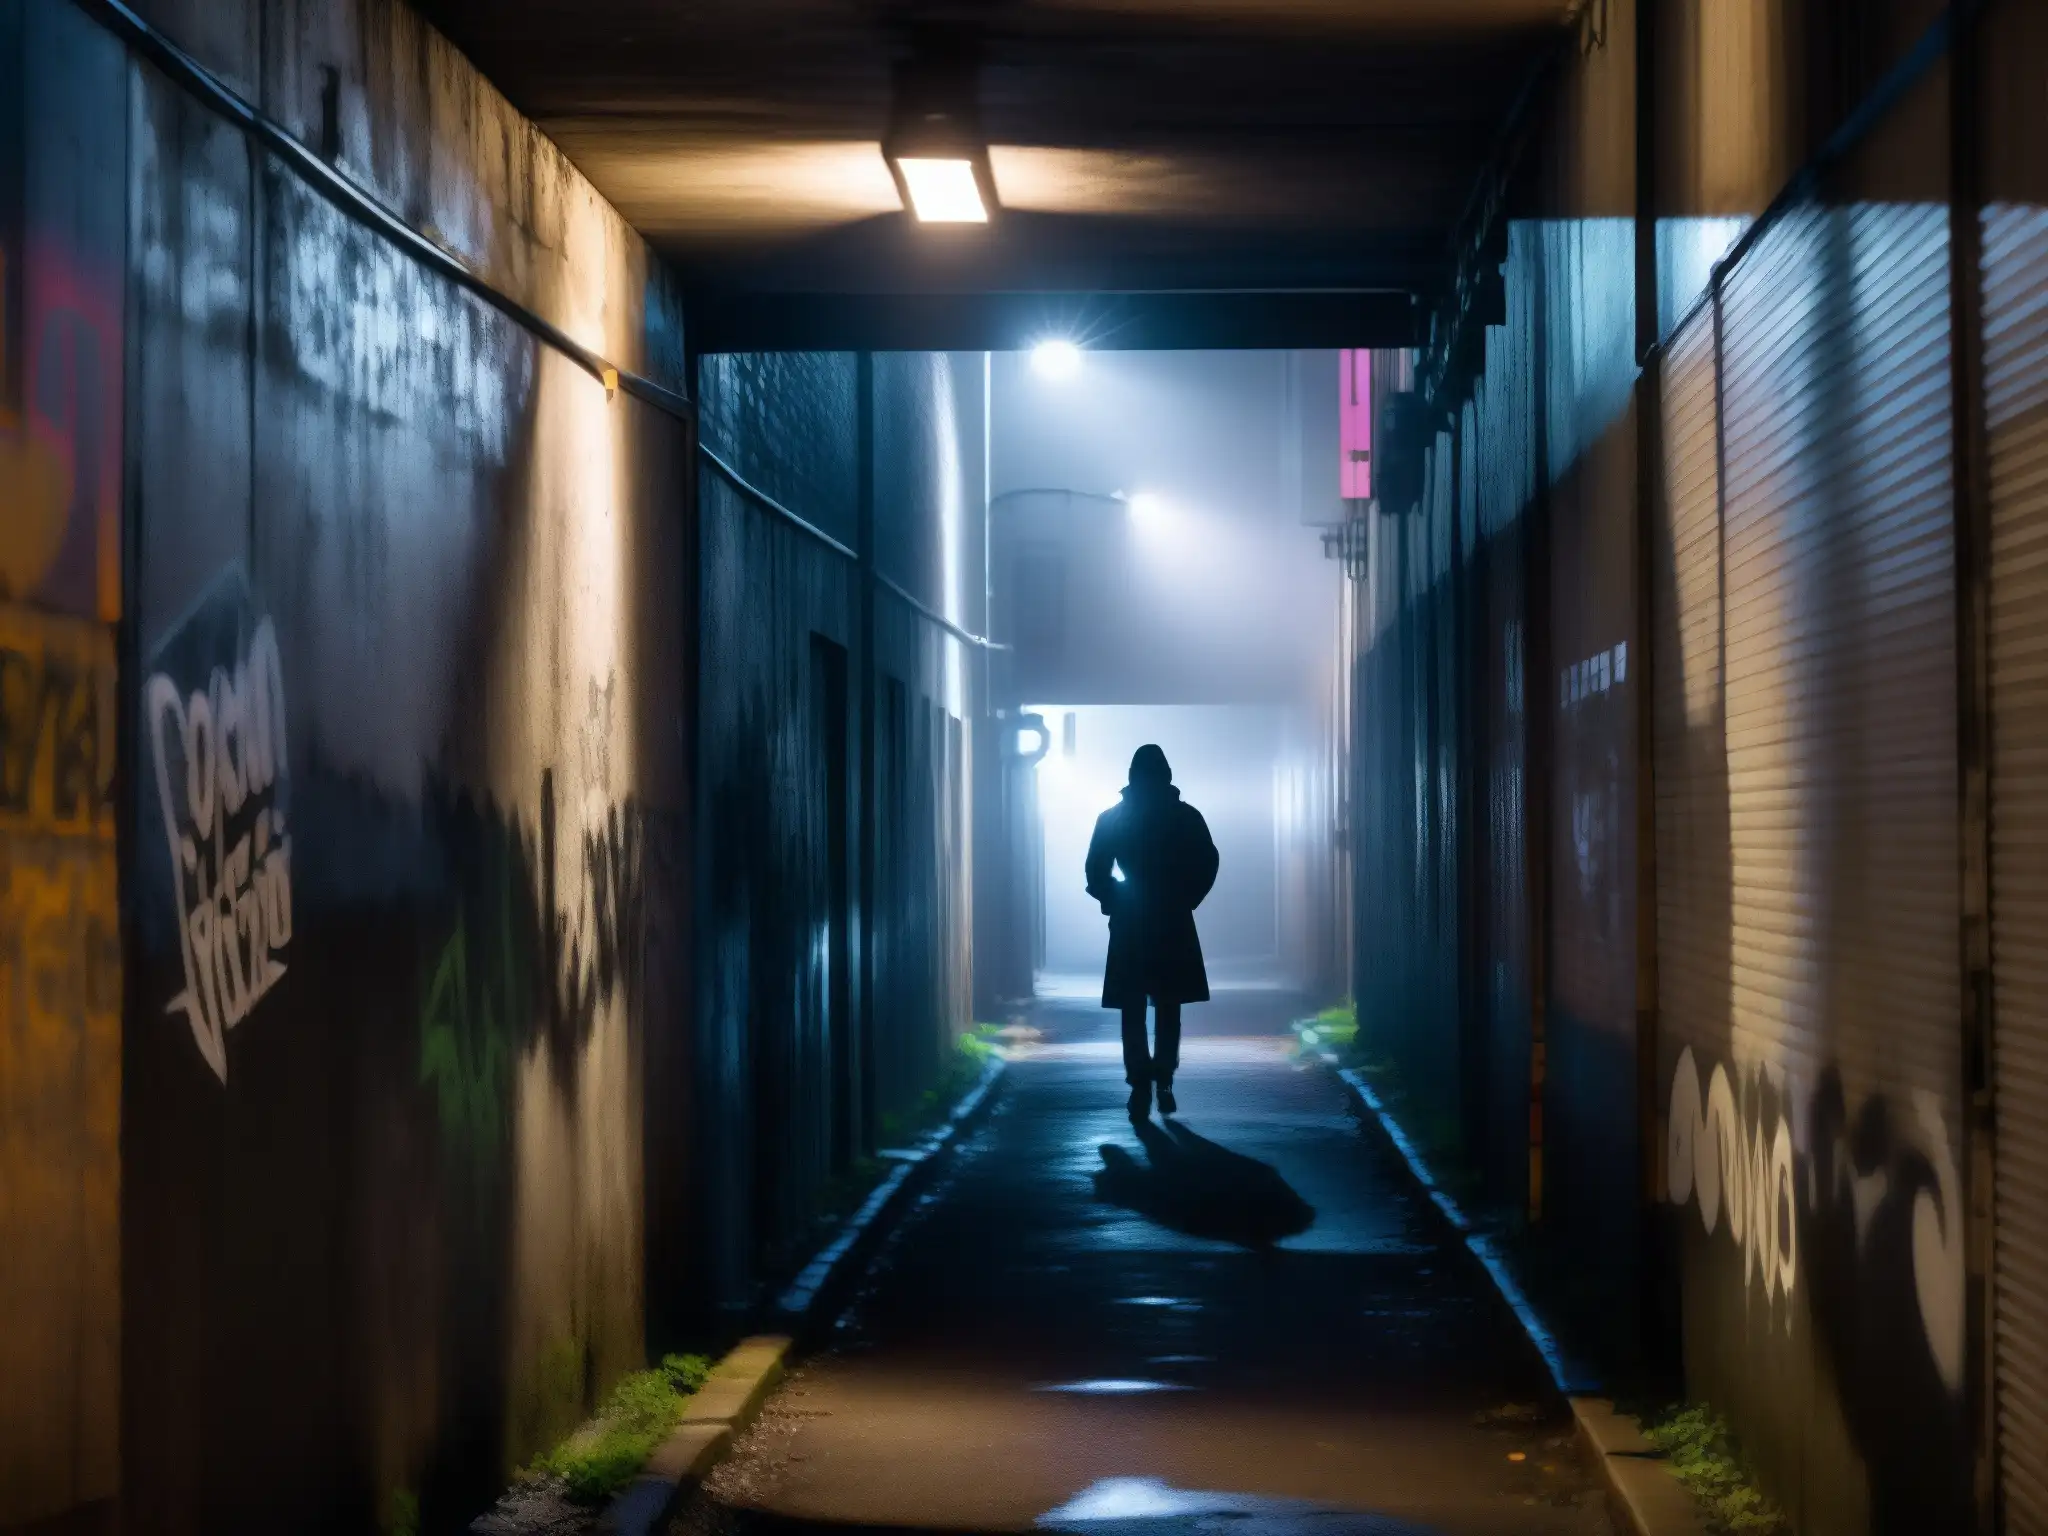 Un callejón urbano sombrío con graffiti, neblina y una figura misteriosa en la distancia